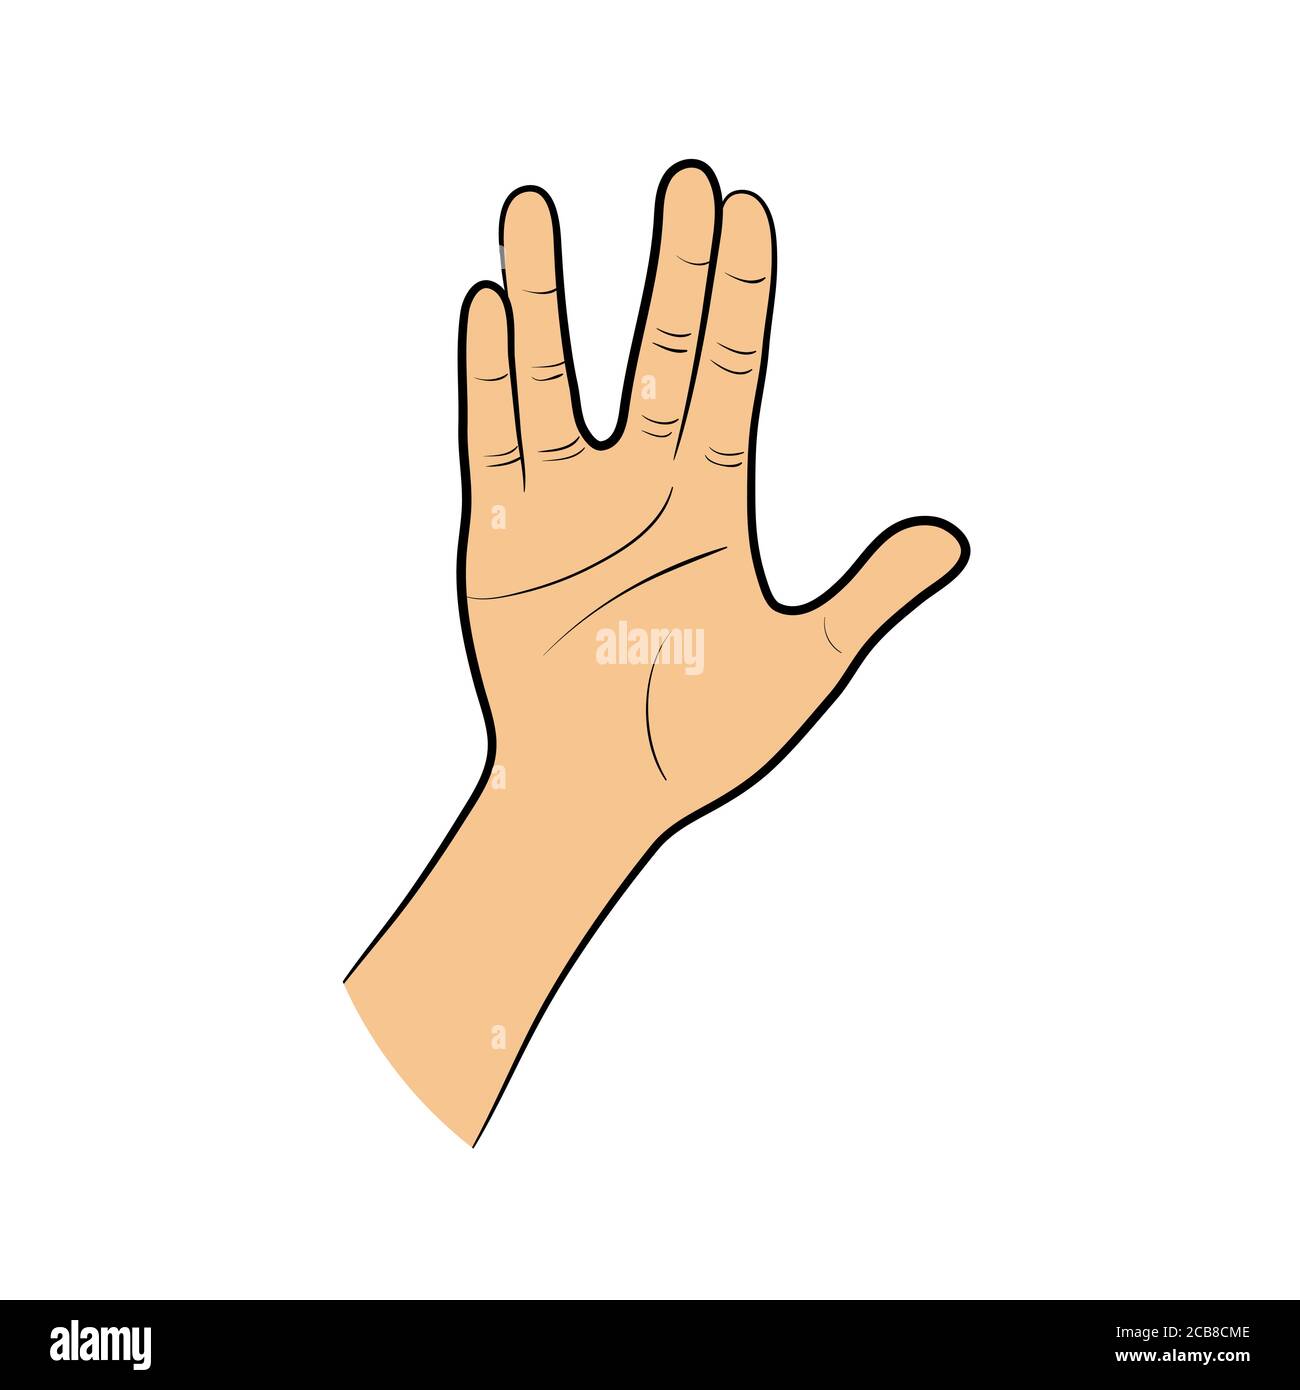 Salute Hand Gesture. Vector. Stock Vector